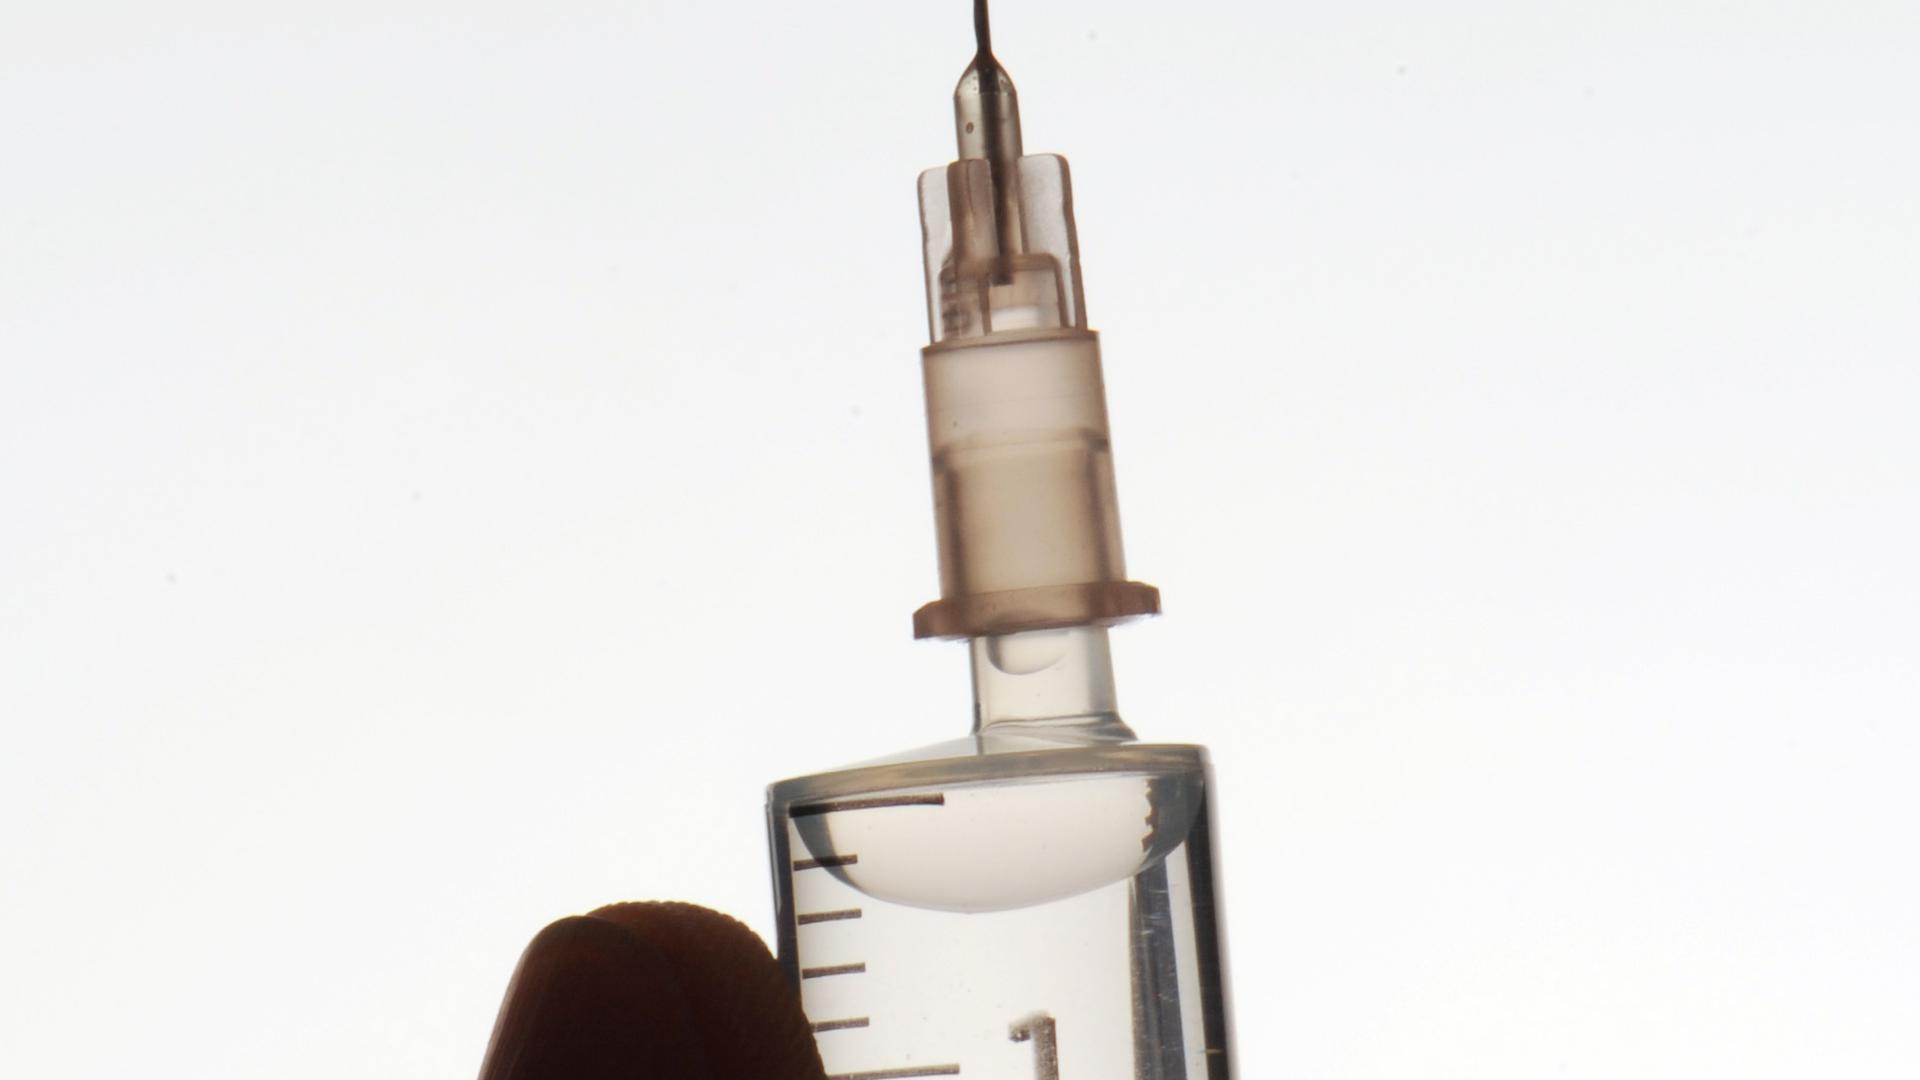 ARCHIV - ILLUSTRATION - Eine Hand hält eine Spritze, aufgenommen am 13.03.2010. Der Impfstoff gegen Humane Papillomaviren (HPV) könnte nach Ansicht von Wissenschaftlern auch Jungen vor gefährlichen Krankheiten schützen. Mädchen soll die Immunisierung vor Gebärmutterhalskrebs, der durch die HP-Viren ausgelöst werden kann, bewahren. Foto: Armin Weigel dpa (zu dpa "Expertenstreit: HPV-Impfung auch für Jungs sinnvoll?" vom 01.07.2016) +++ dpa-Bildfunk +++